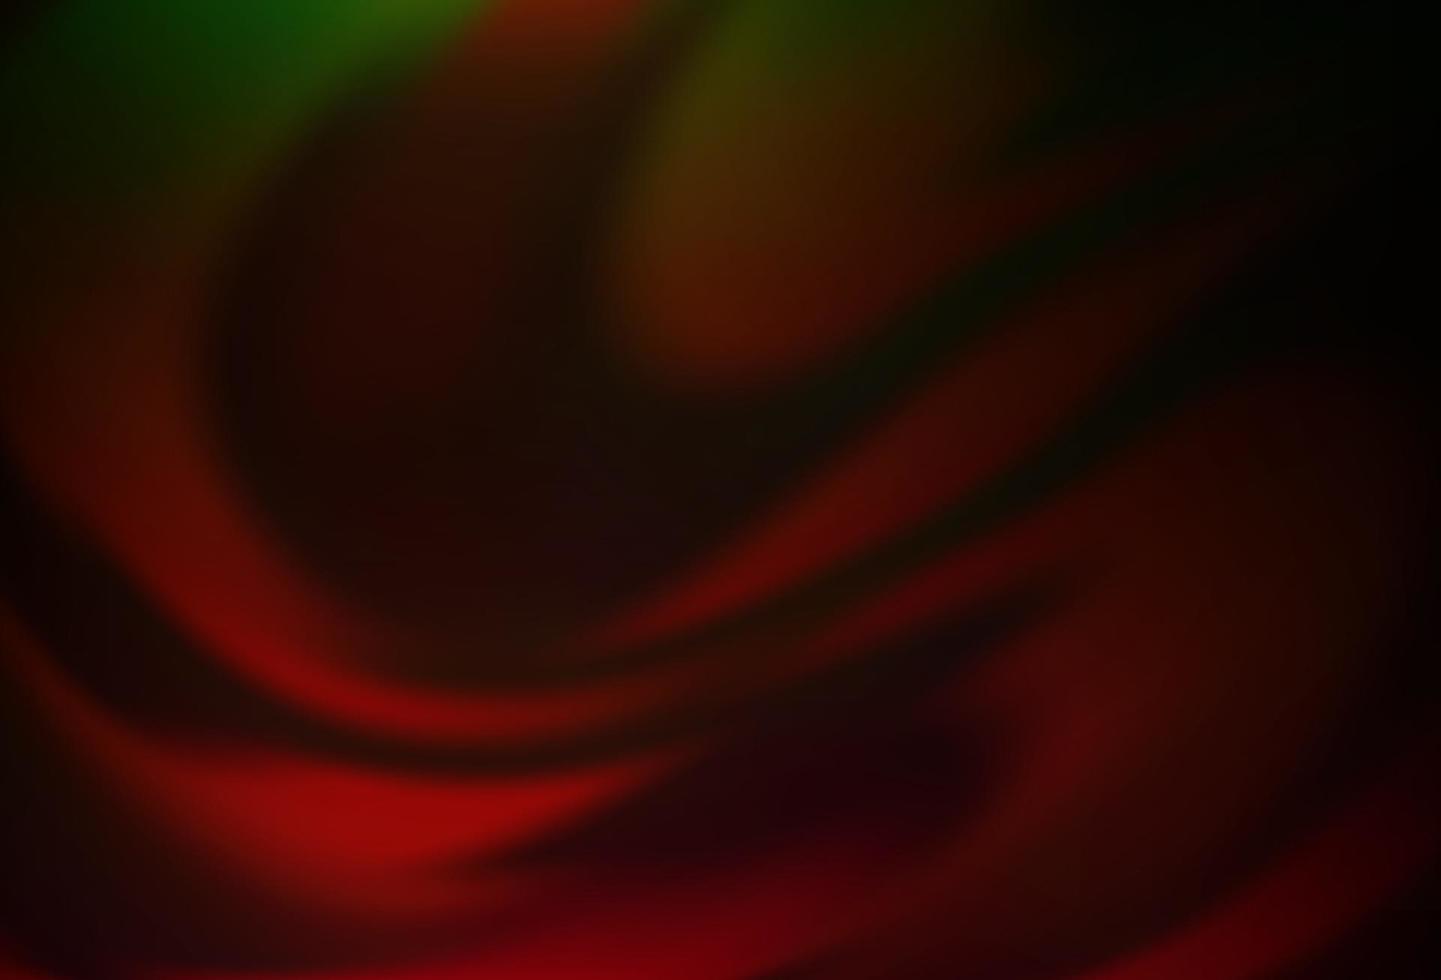 vert foncé, texture abstraite colorée de vecteur rouge.